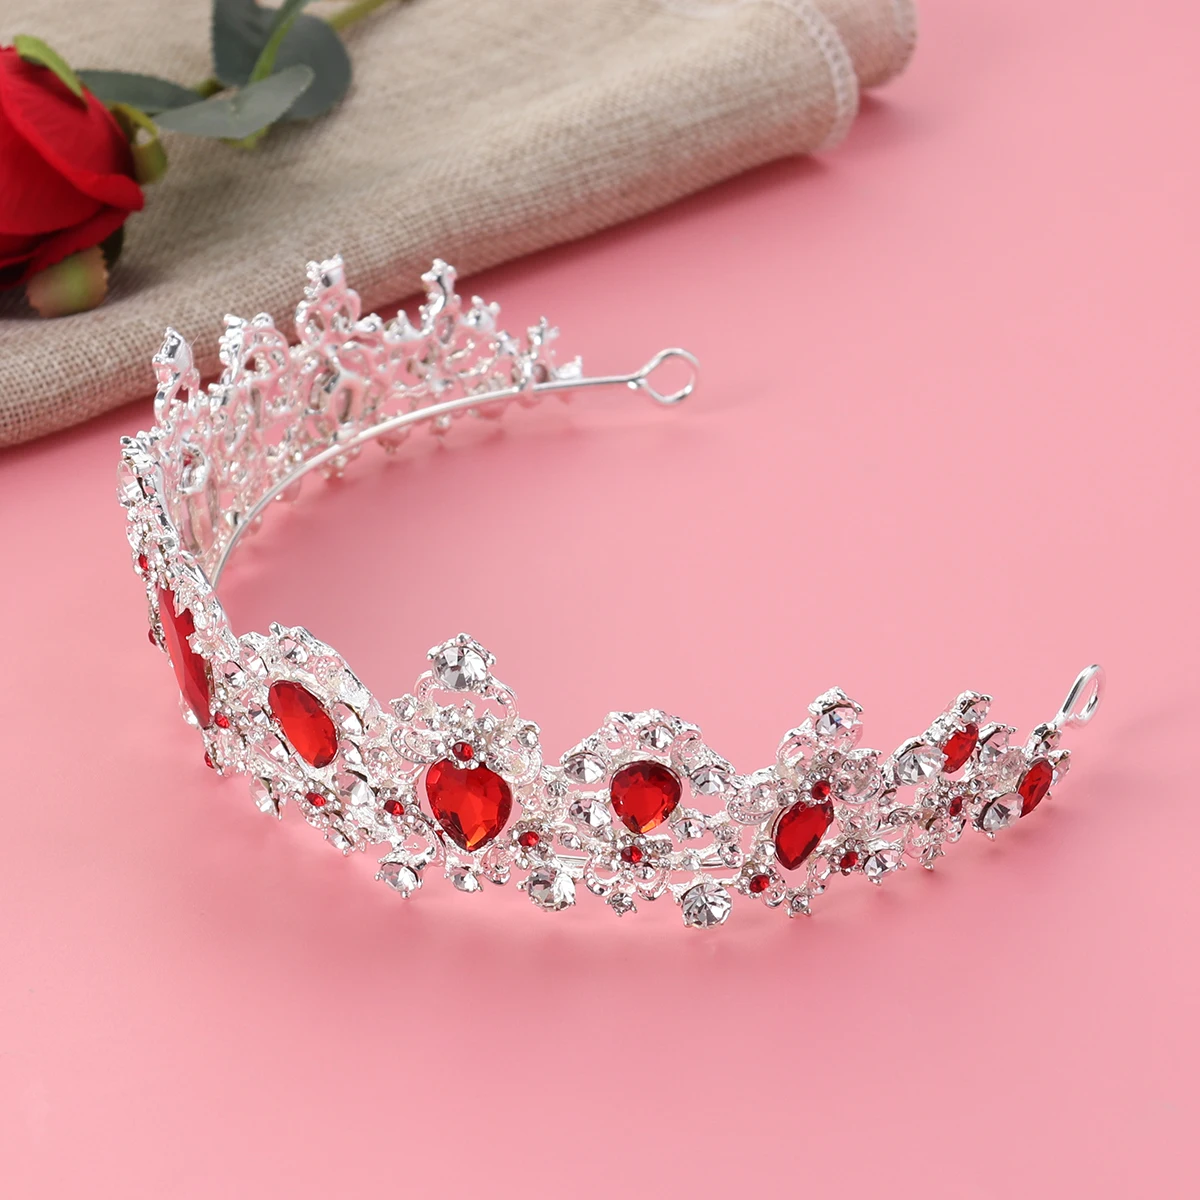 Королевская Хрустальная тиара свадебная корона принцесса головные уборы Свадебные аксессуары для волос(серебряная основа, красный